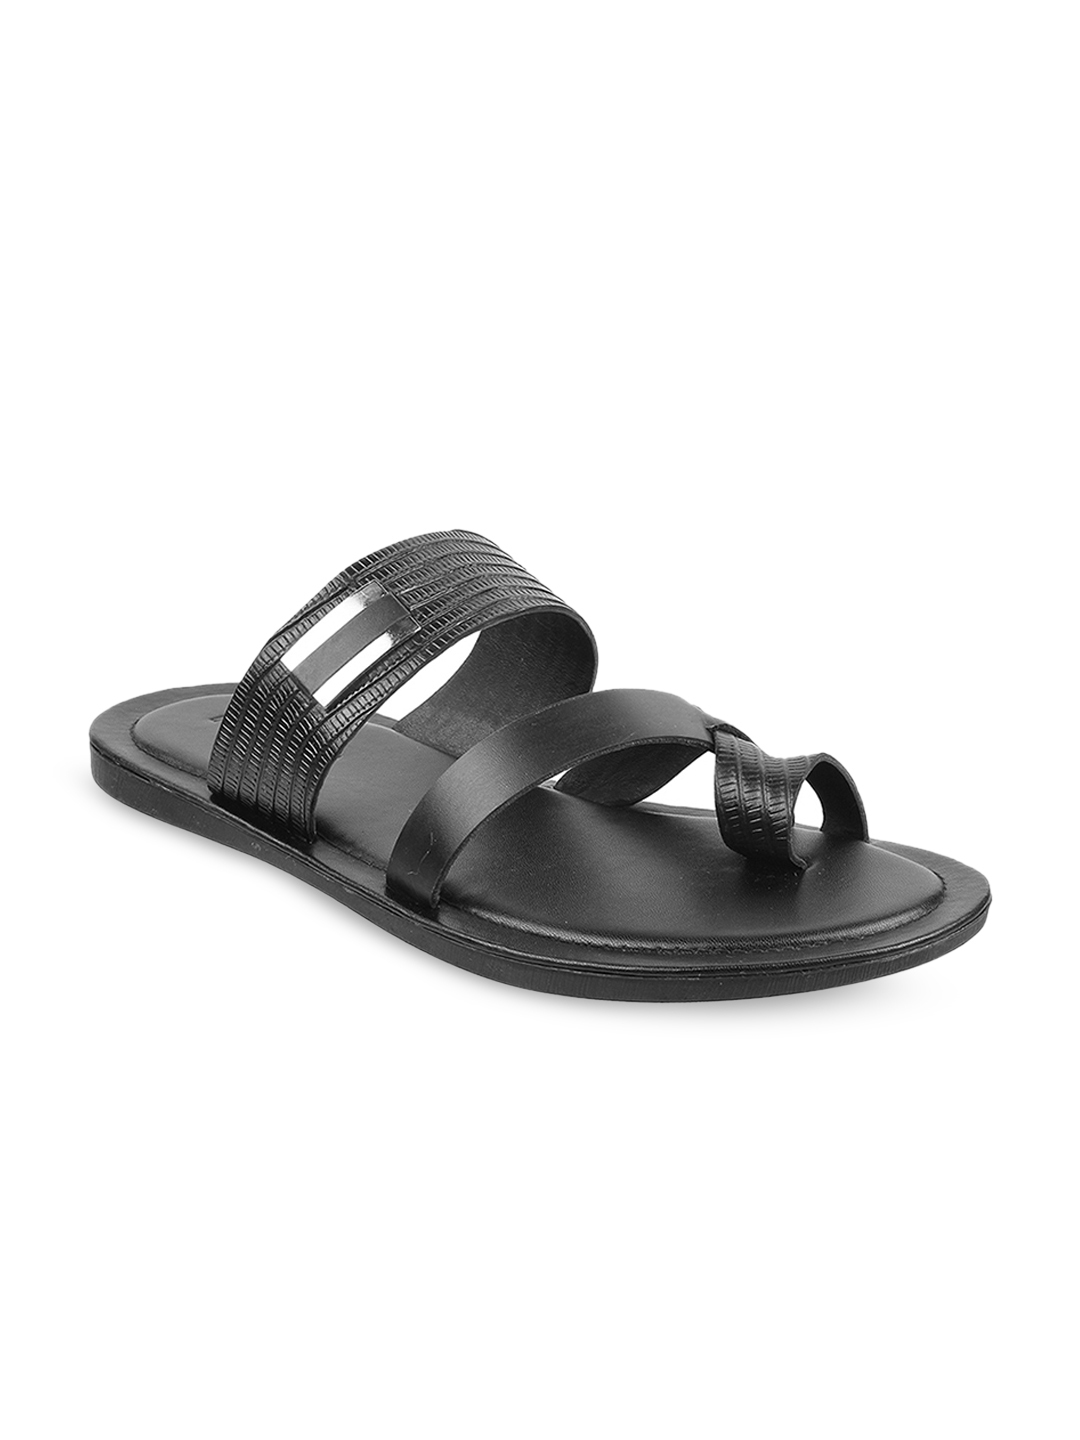 Buy Mochi Men Black Leather Sandals - Sandals for Men 11020556 | Myntra